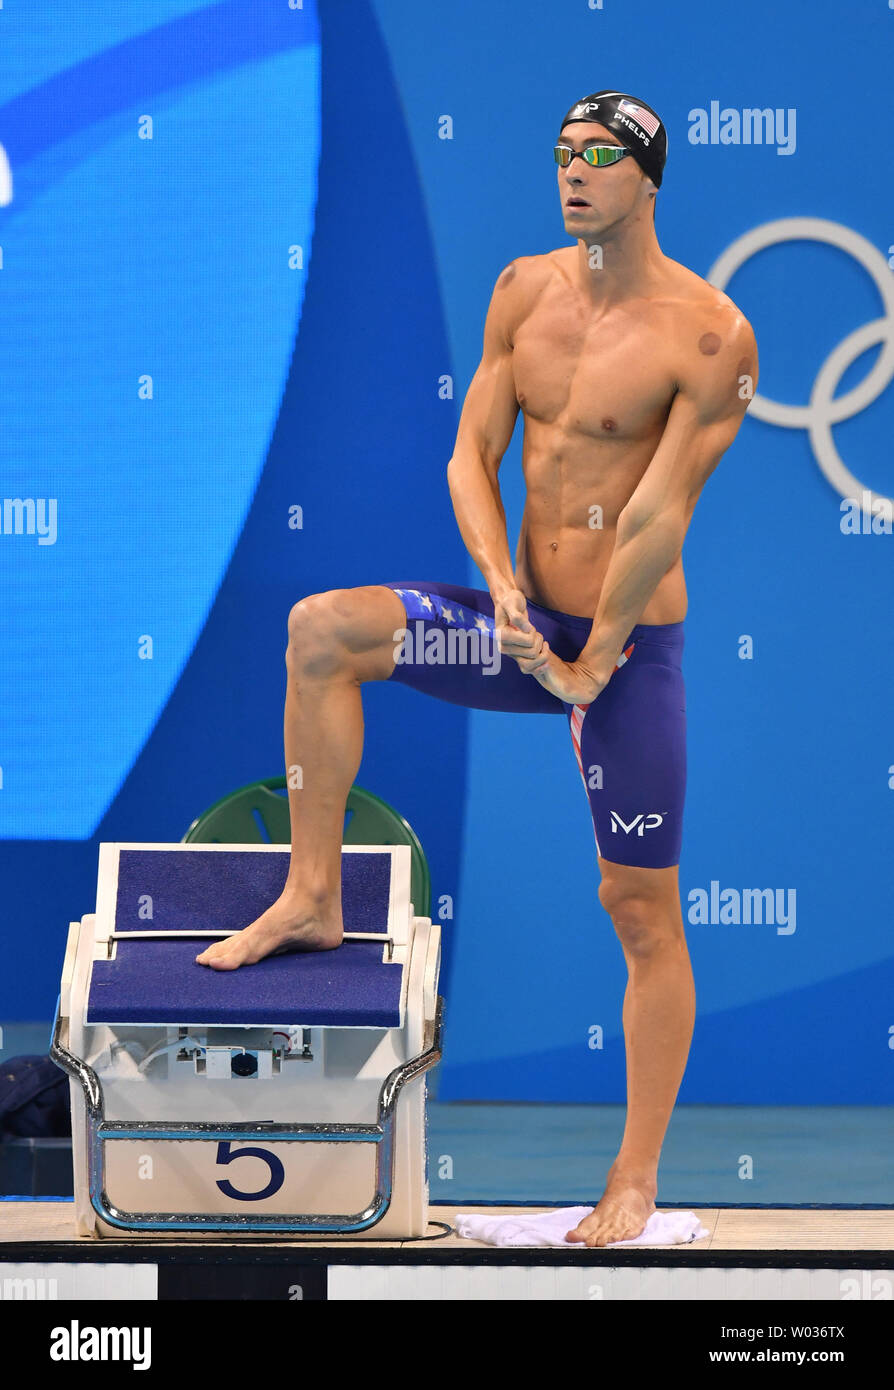 Michael Phelps des États-Unis se prépare à livrer concurrence dans l'épreuve du 200m papillon aux Jeux olympiques de natation au stade des Jeux Olympiques de Rio 2016 à Rio de Janeiro, Brésil, le 9 août 2016. Phelps a remporté l'or avec un temps de avec un temps de 1:53,36. C'est sa 20e médaille d'or. Photo par Kevin Dietsch/UPI Banque D'Images